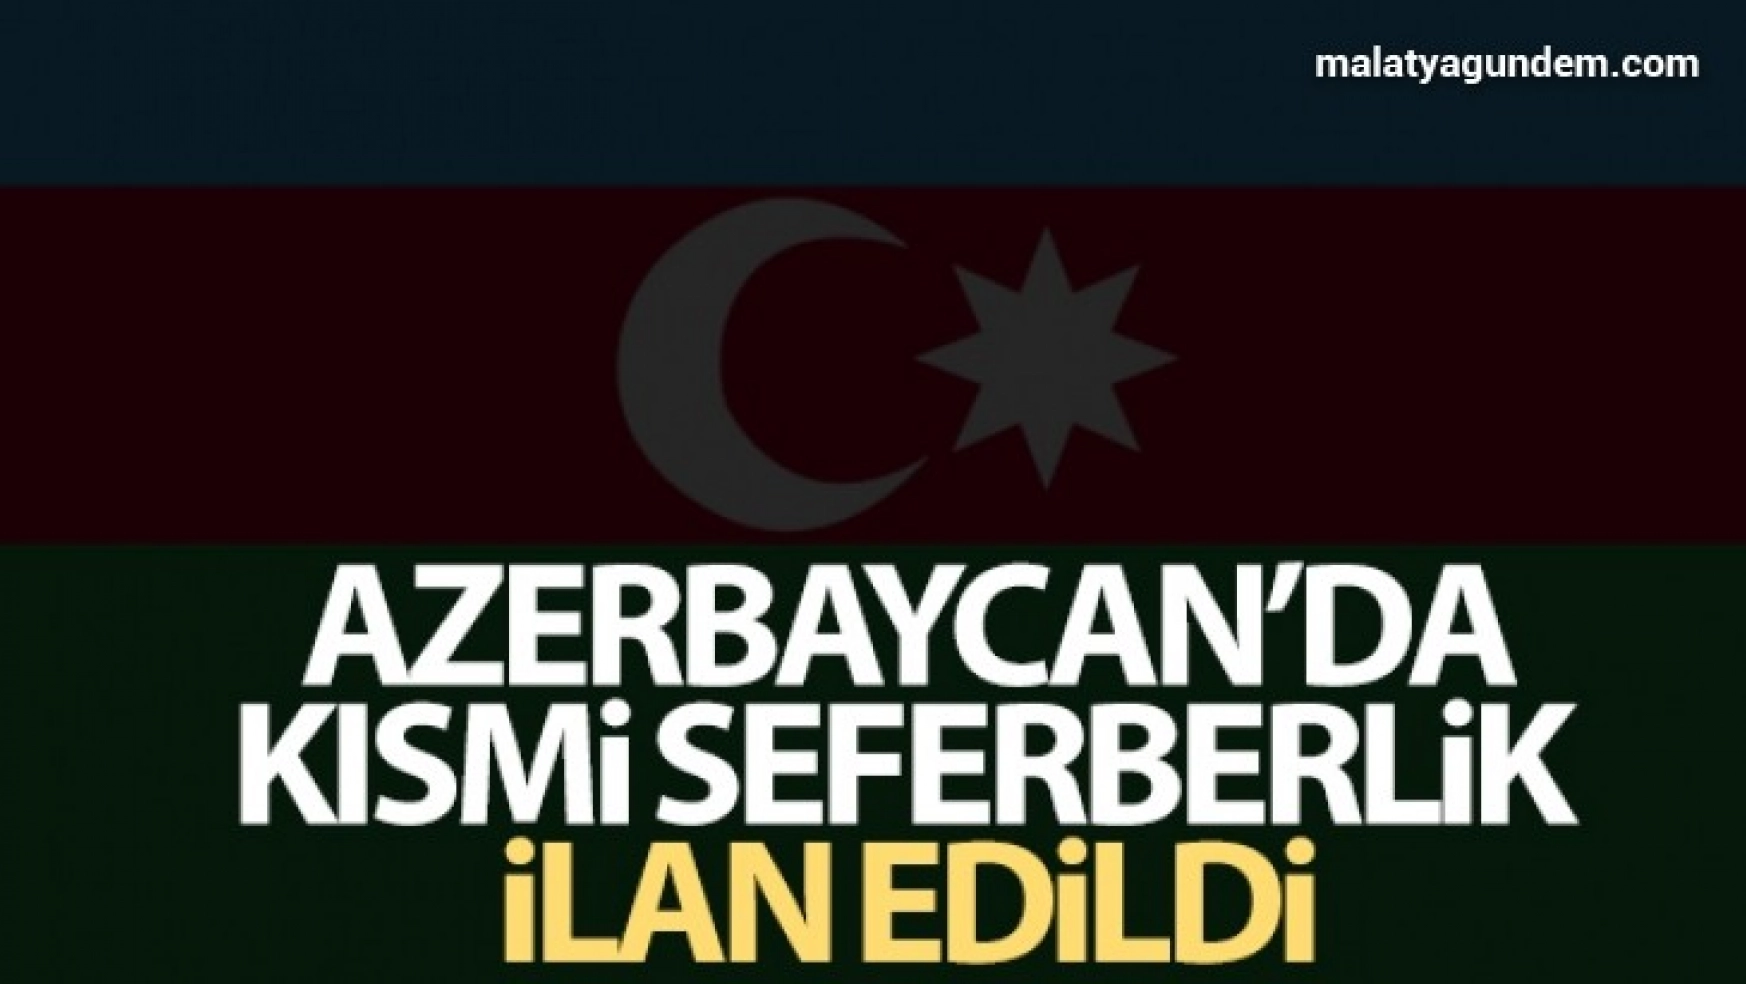 Azerbaycan'da kısmi seferberlik ilan edildi